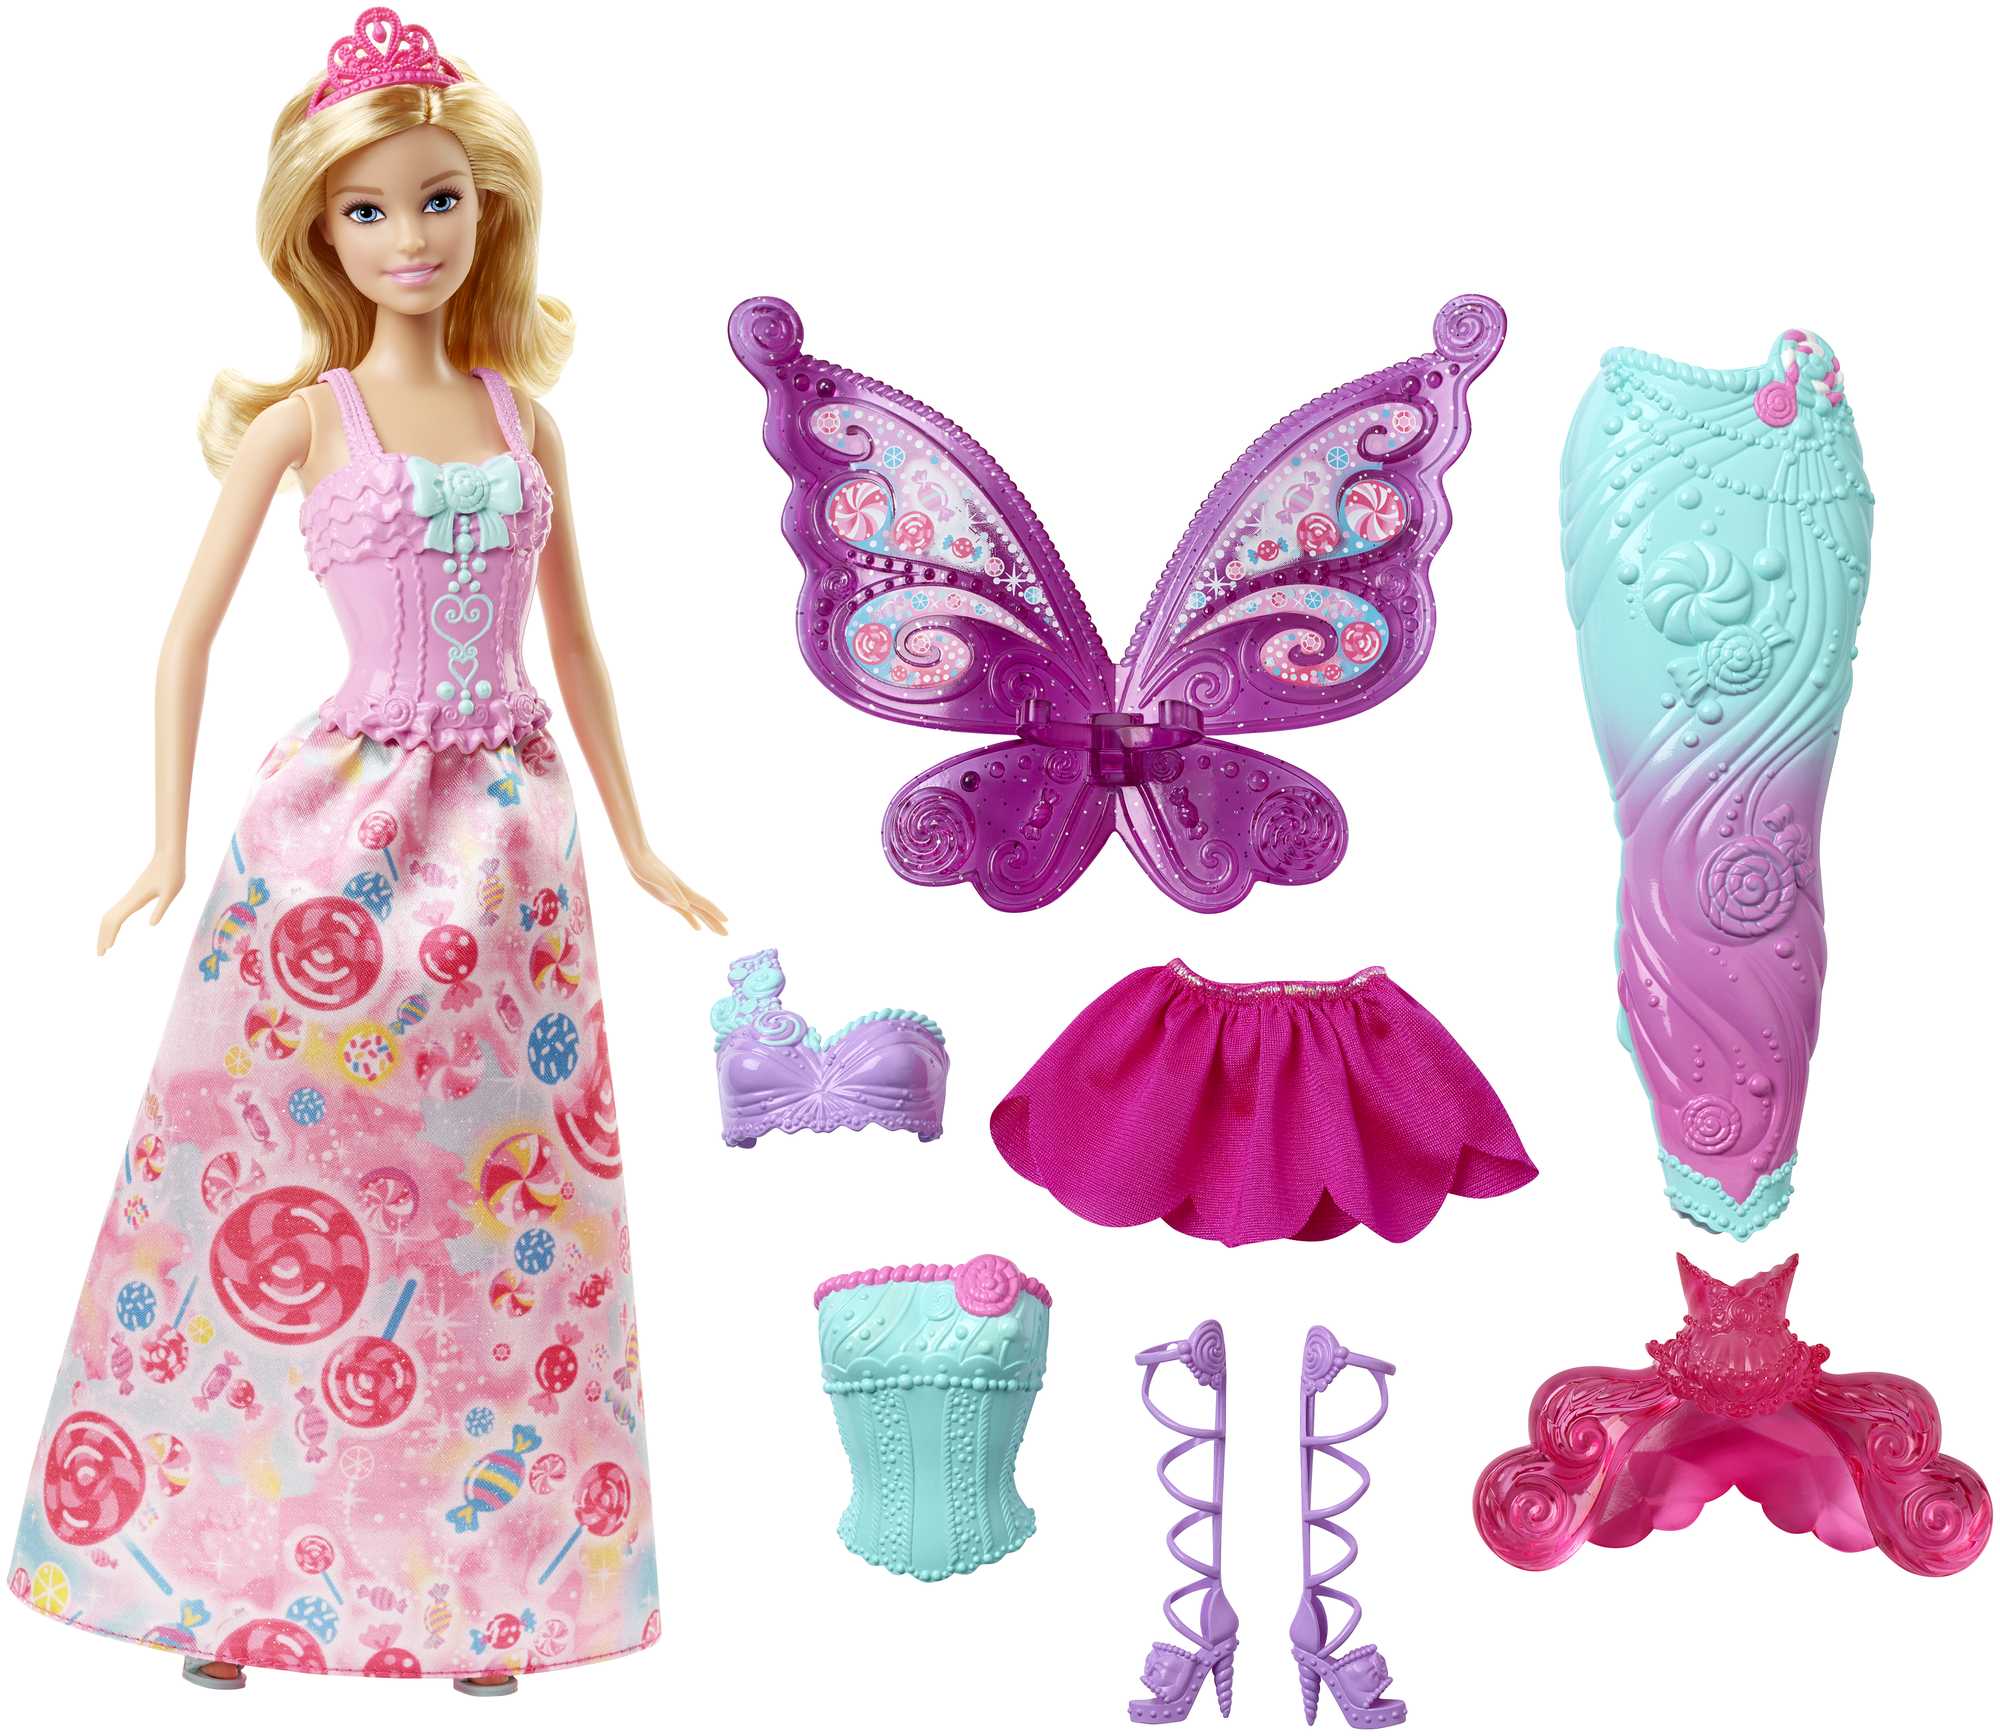 Bambola Barbie con 3 abiti e accessori fantasy, tra cui Mermaid Tail & Fairy Wings